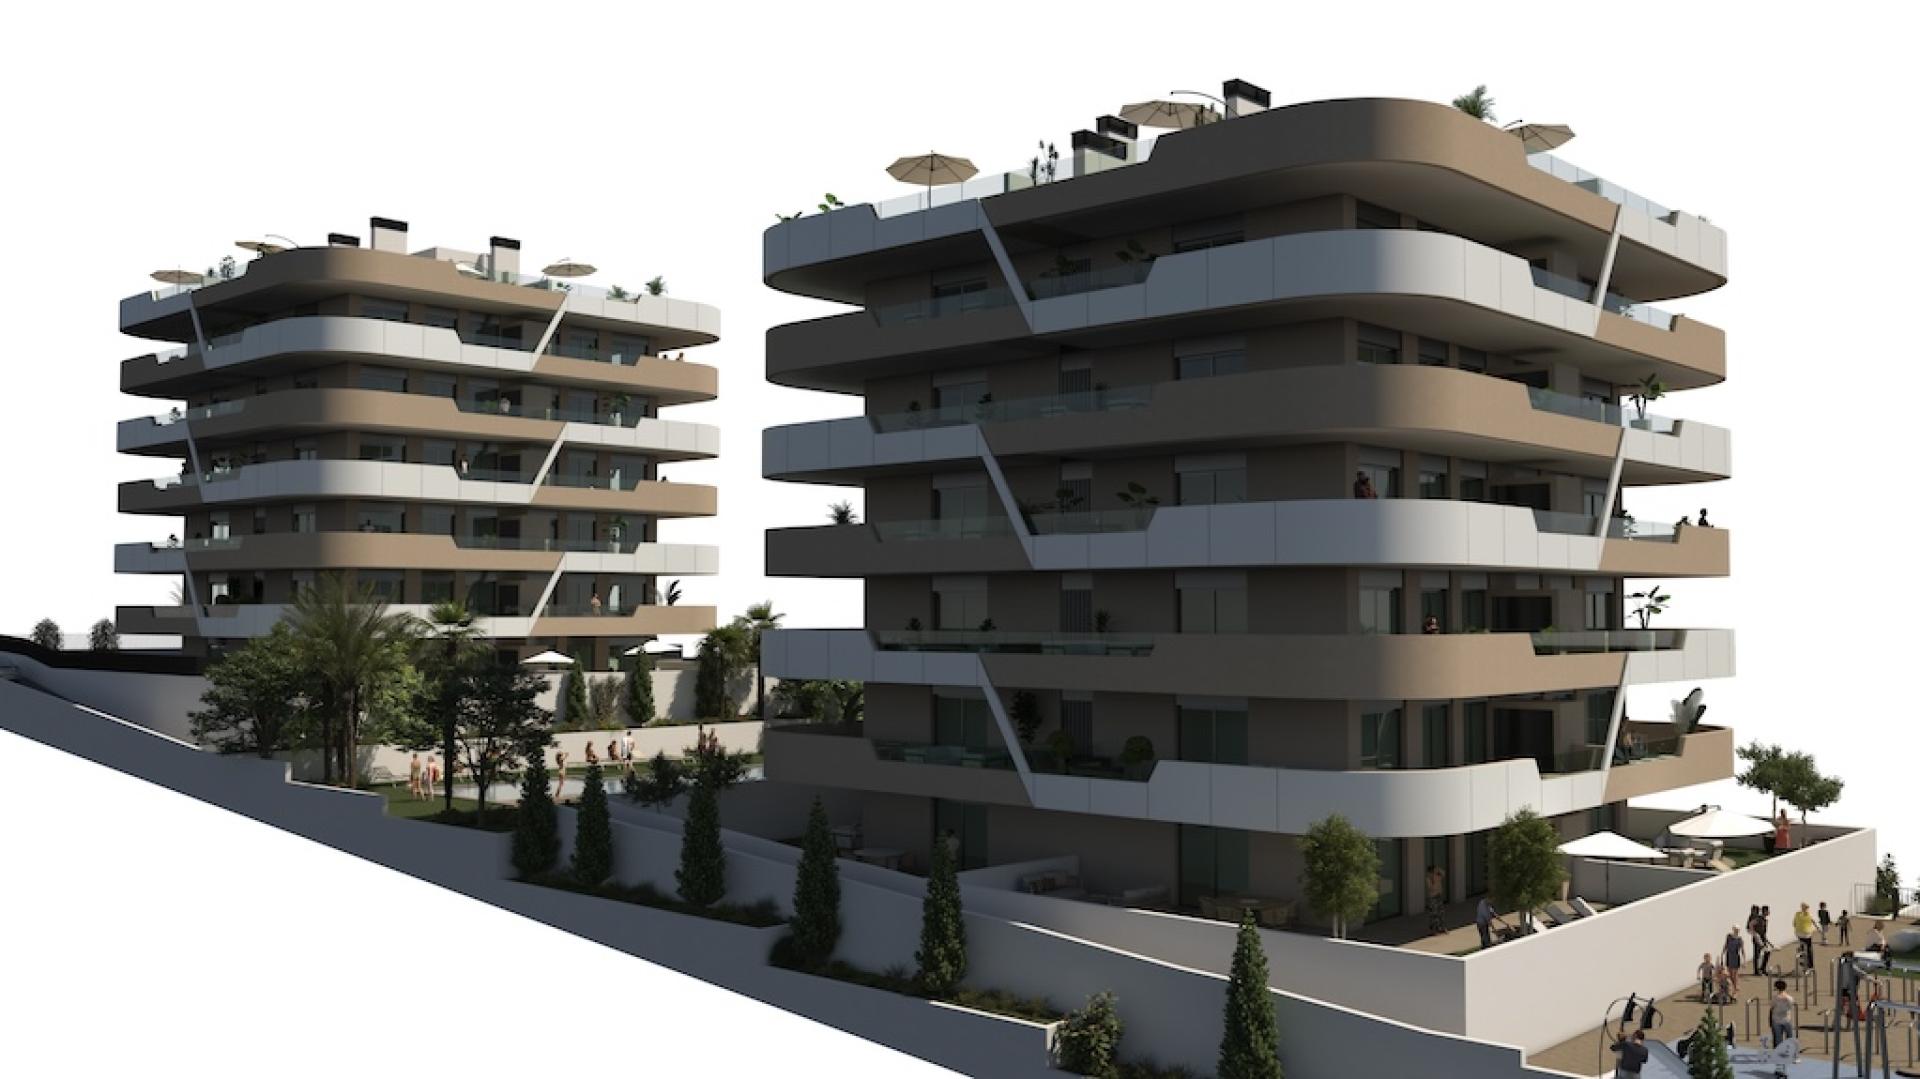 2 slaapkamer Appartement met tuin in Los Arenales del Sol - Nieuwbouw in Medvilla Spanje